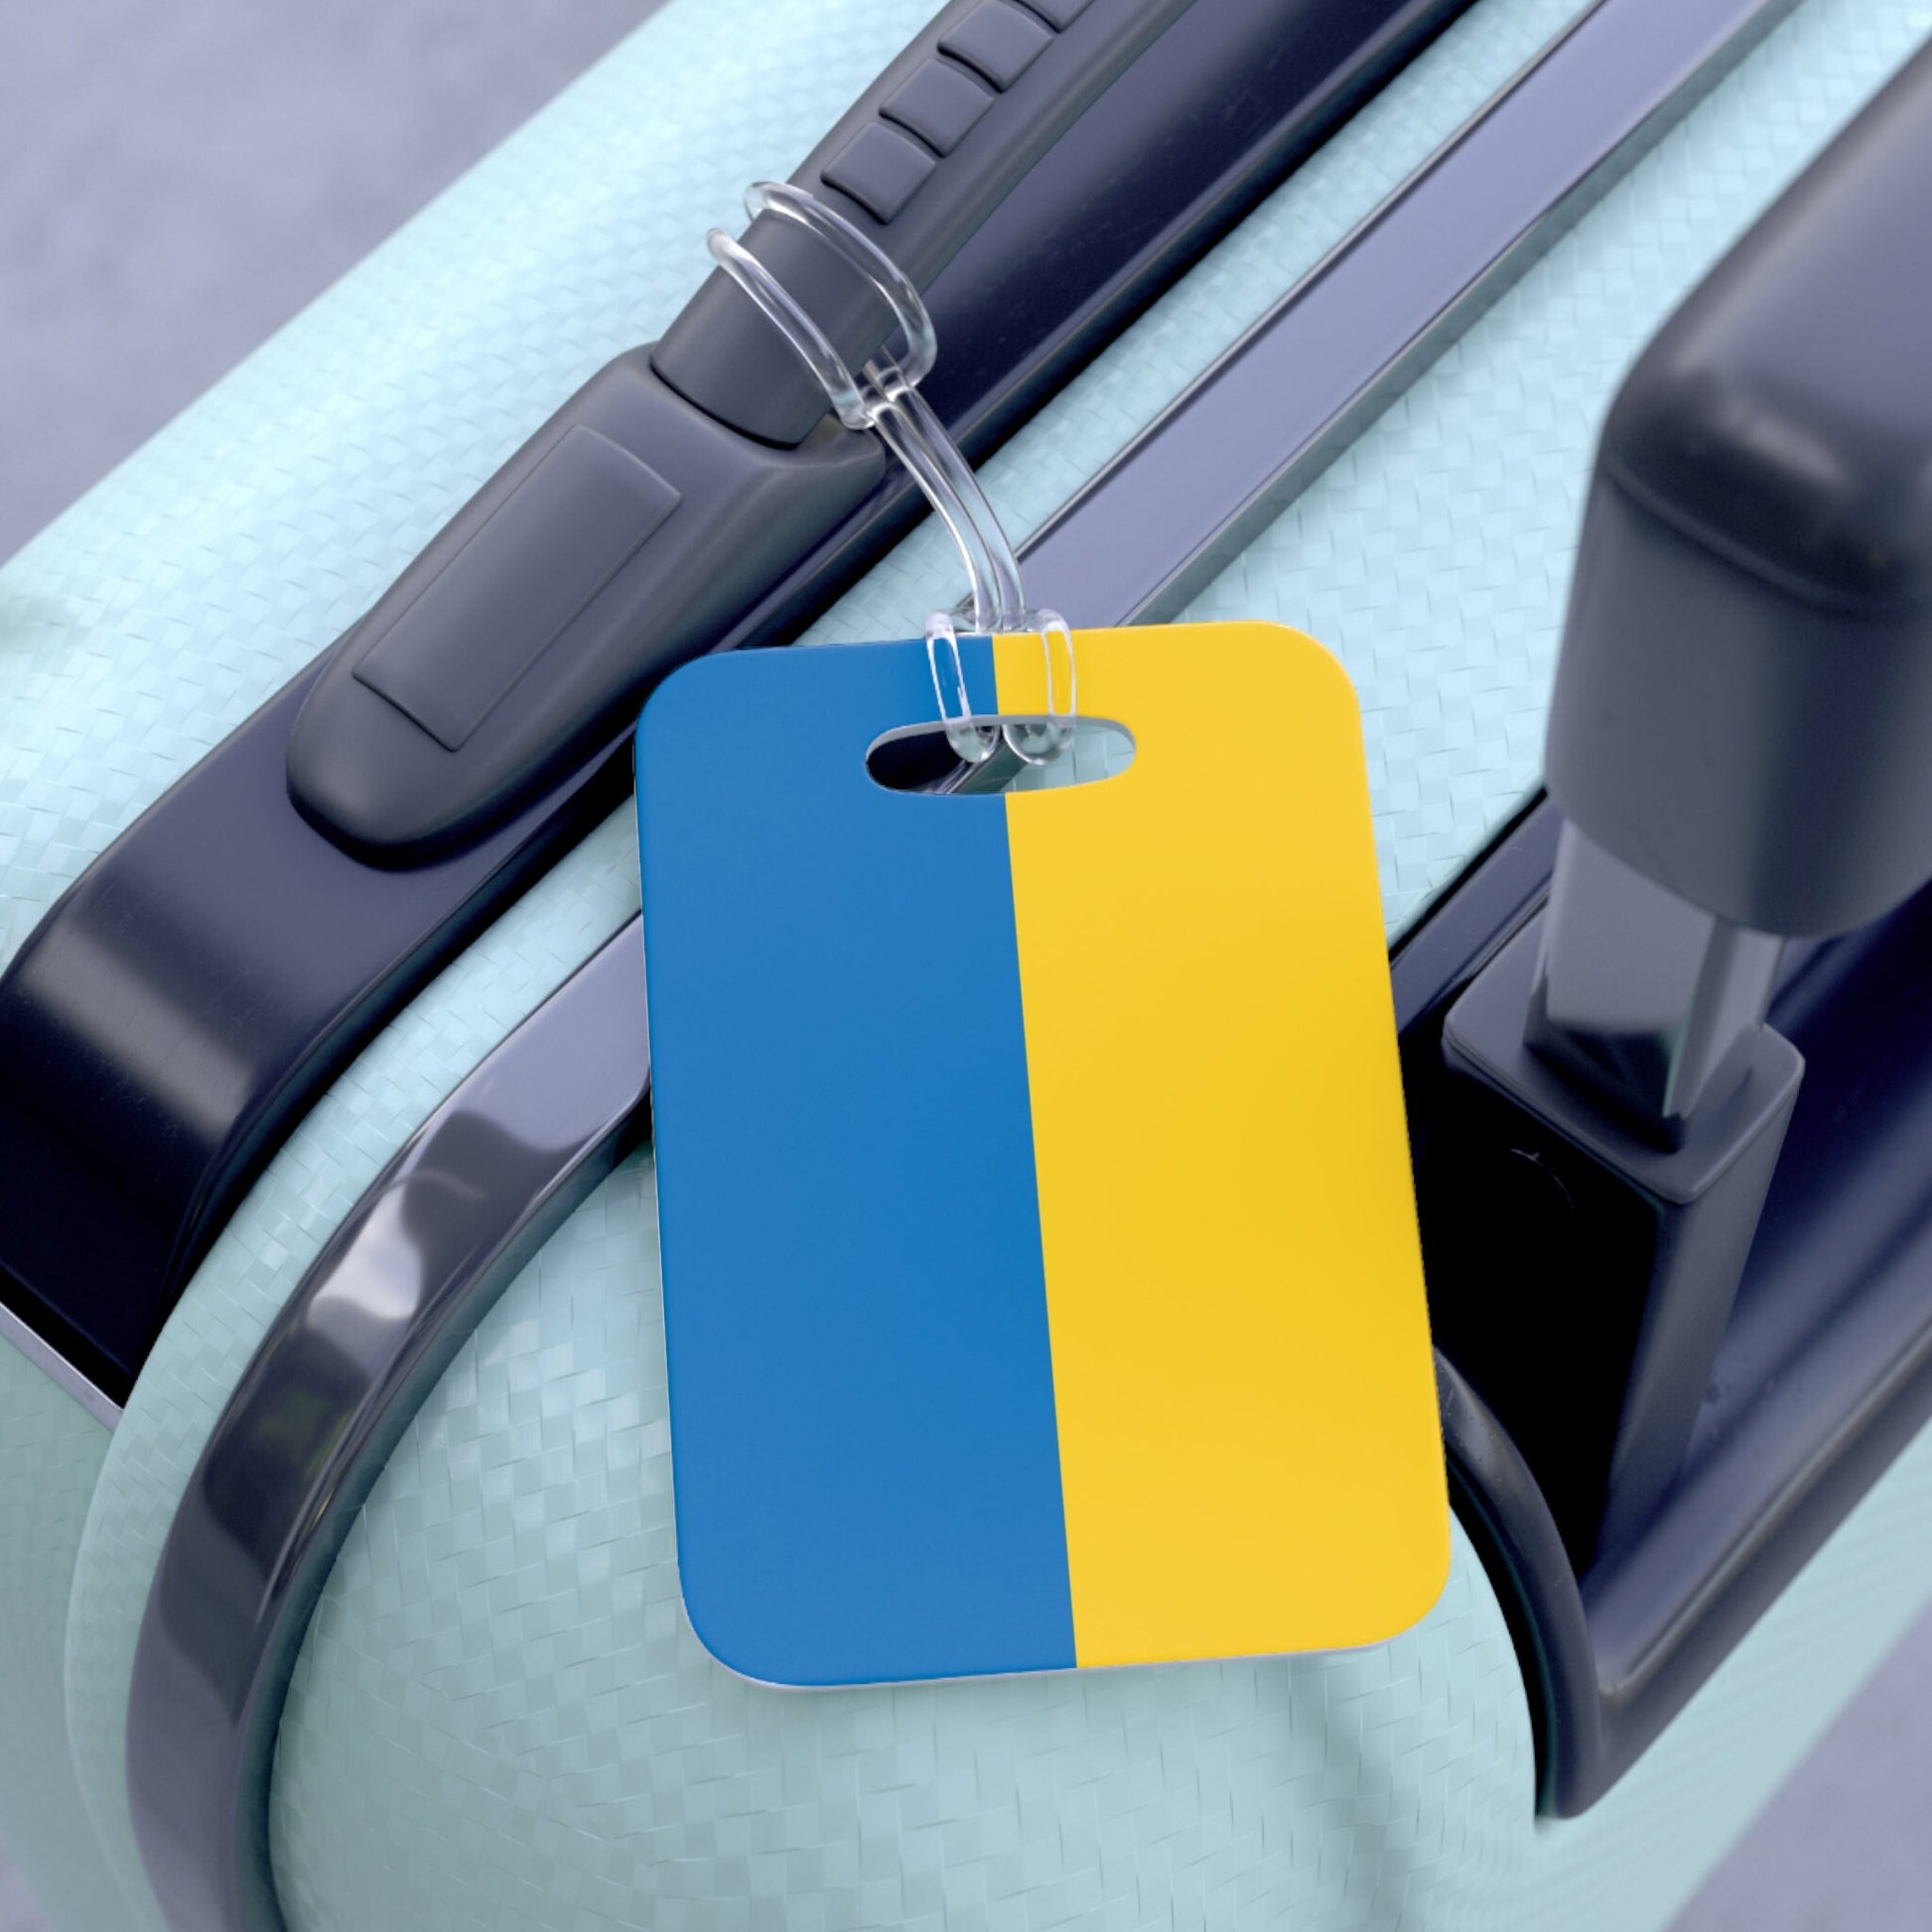 Ukraine Flag Luggage Bag Tag